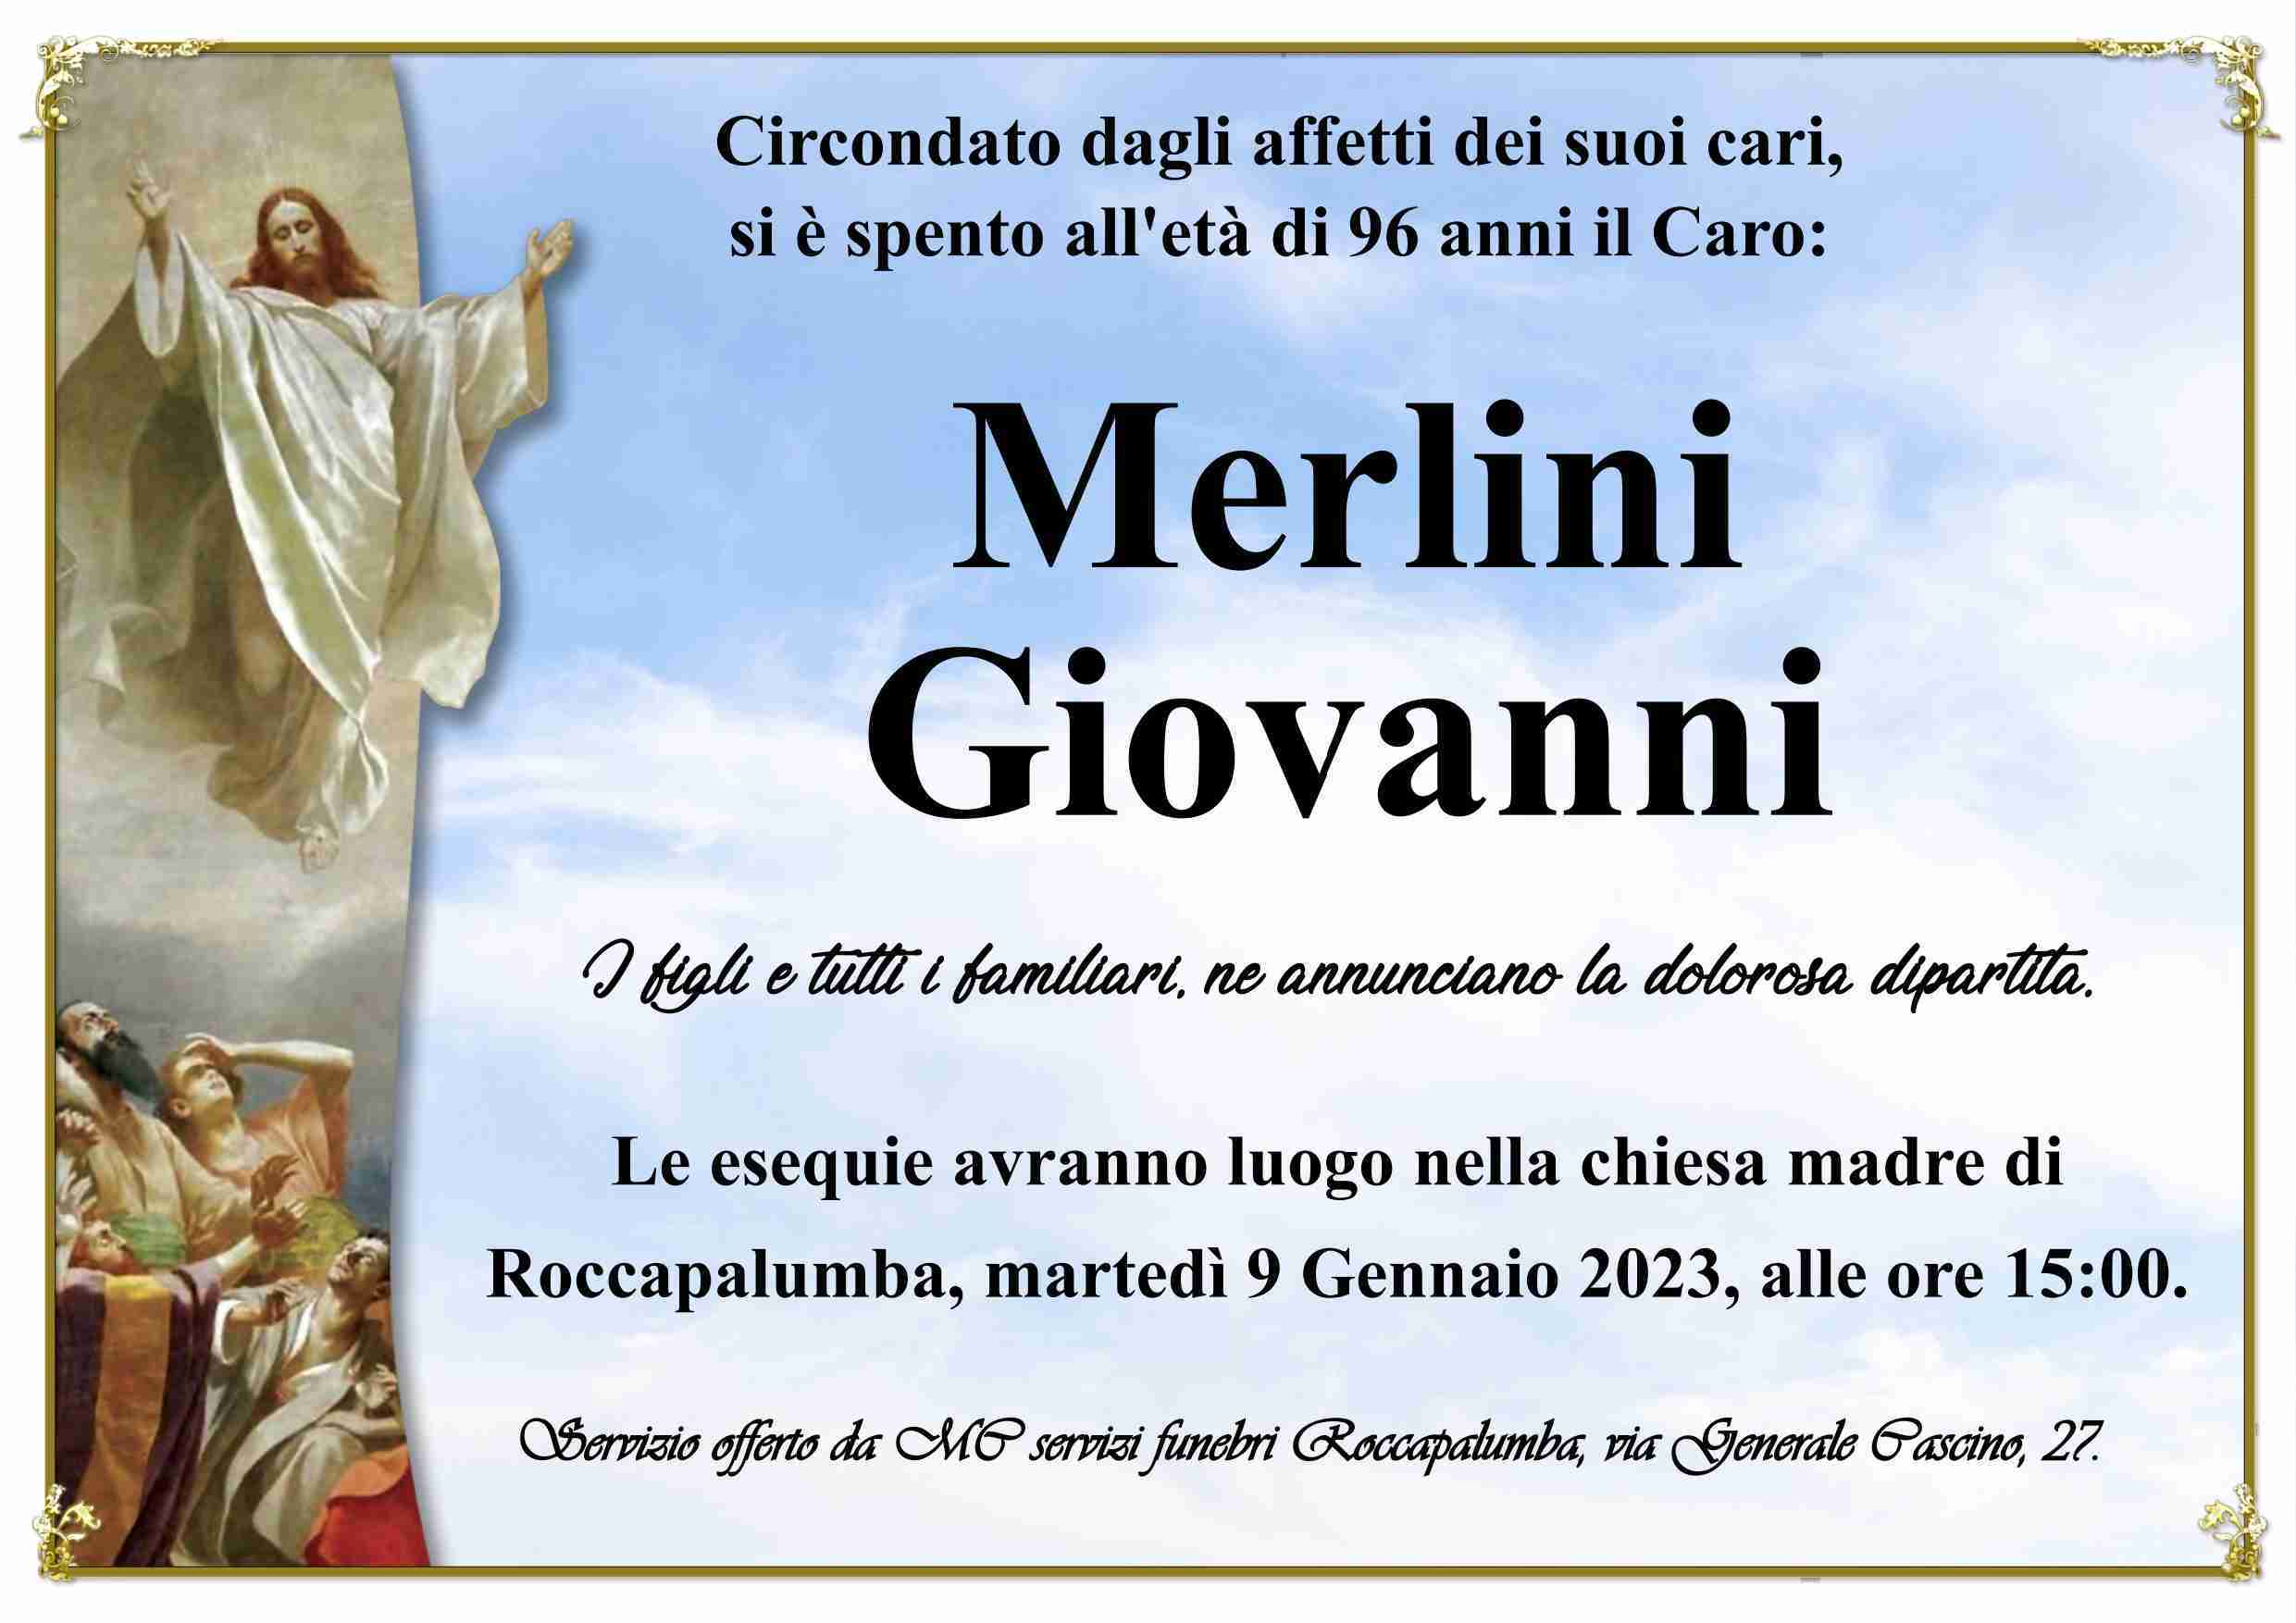 Giovanni Merlini